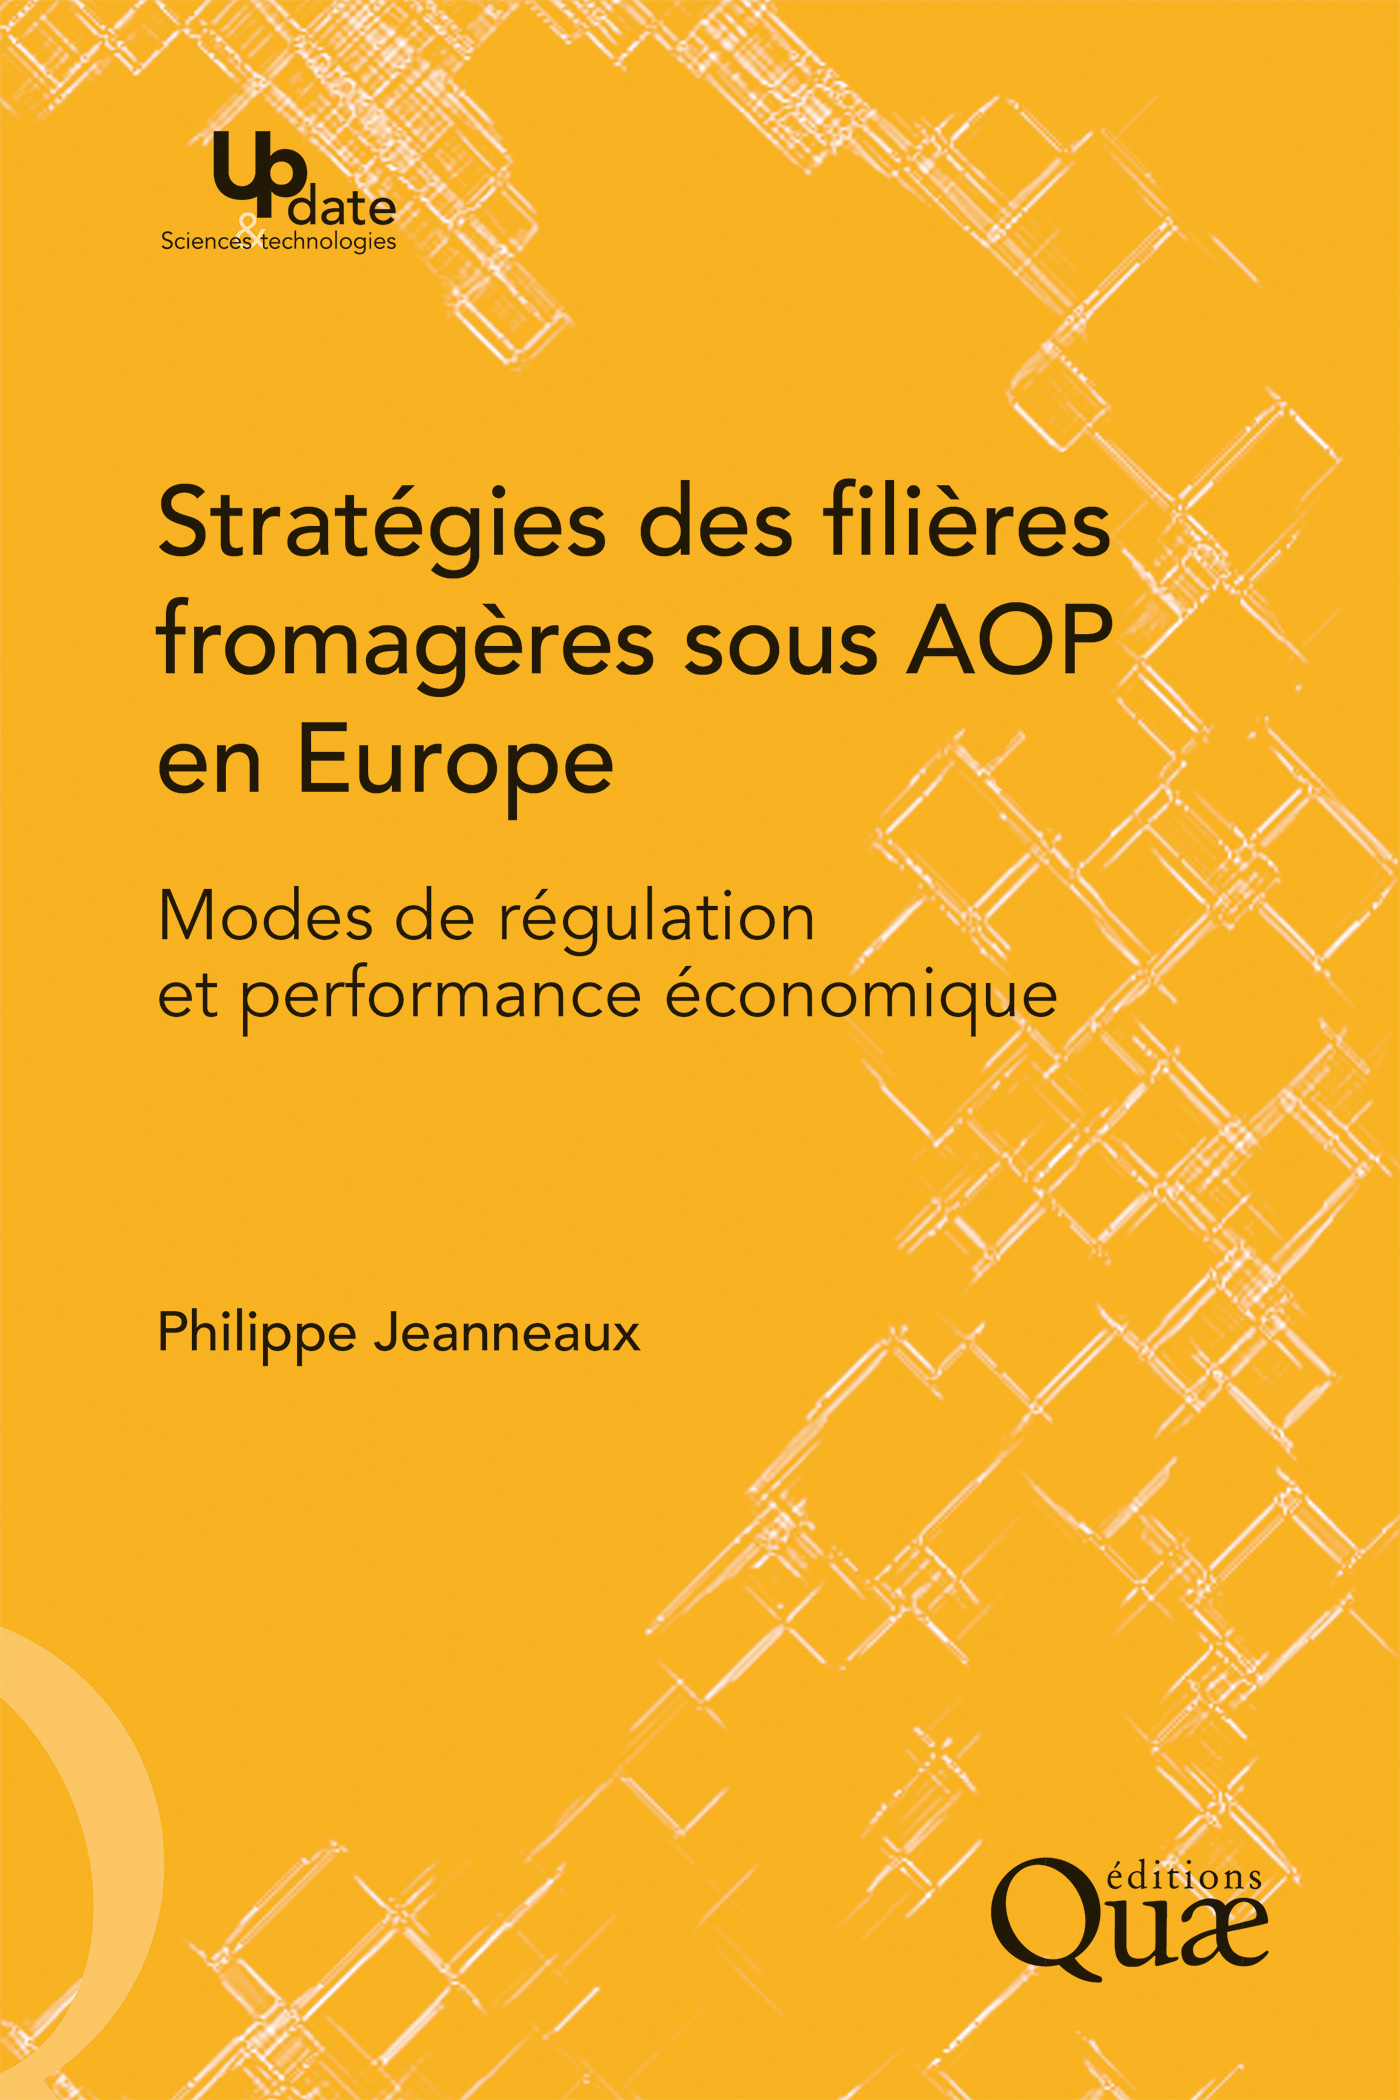 Stratégies des filières fromagères sous AOP en Europe De Philippe Jeanneaux - Quæ